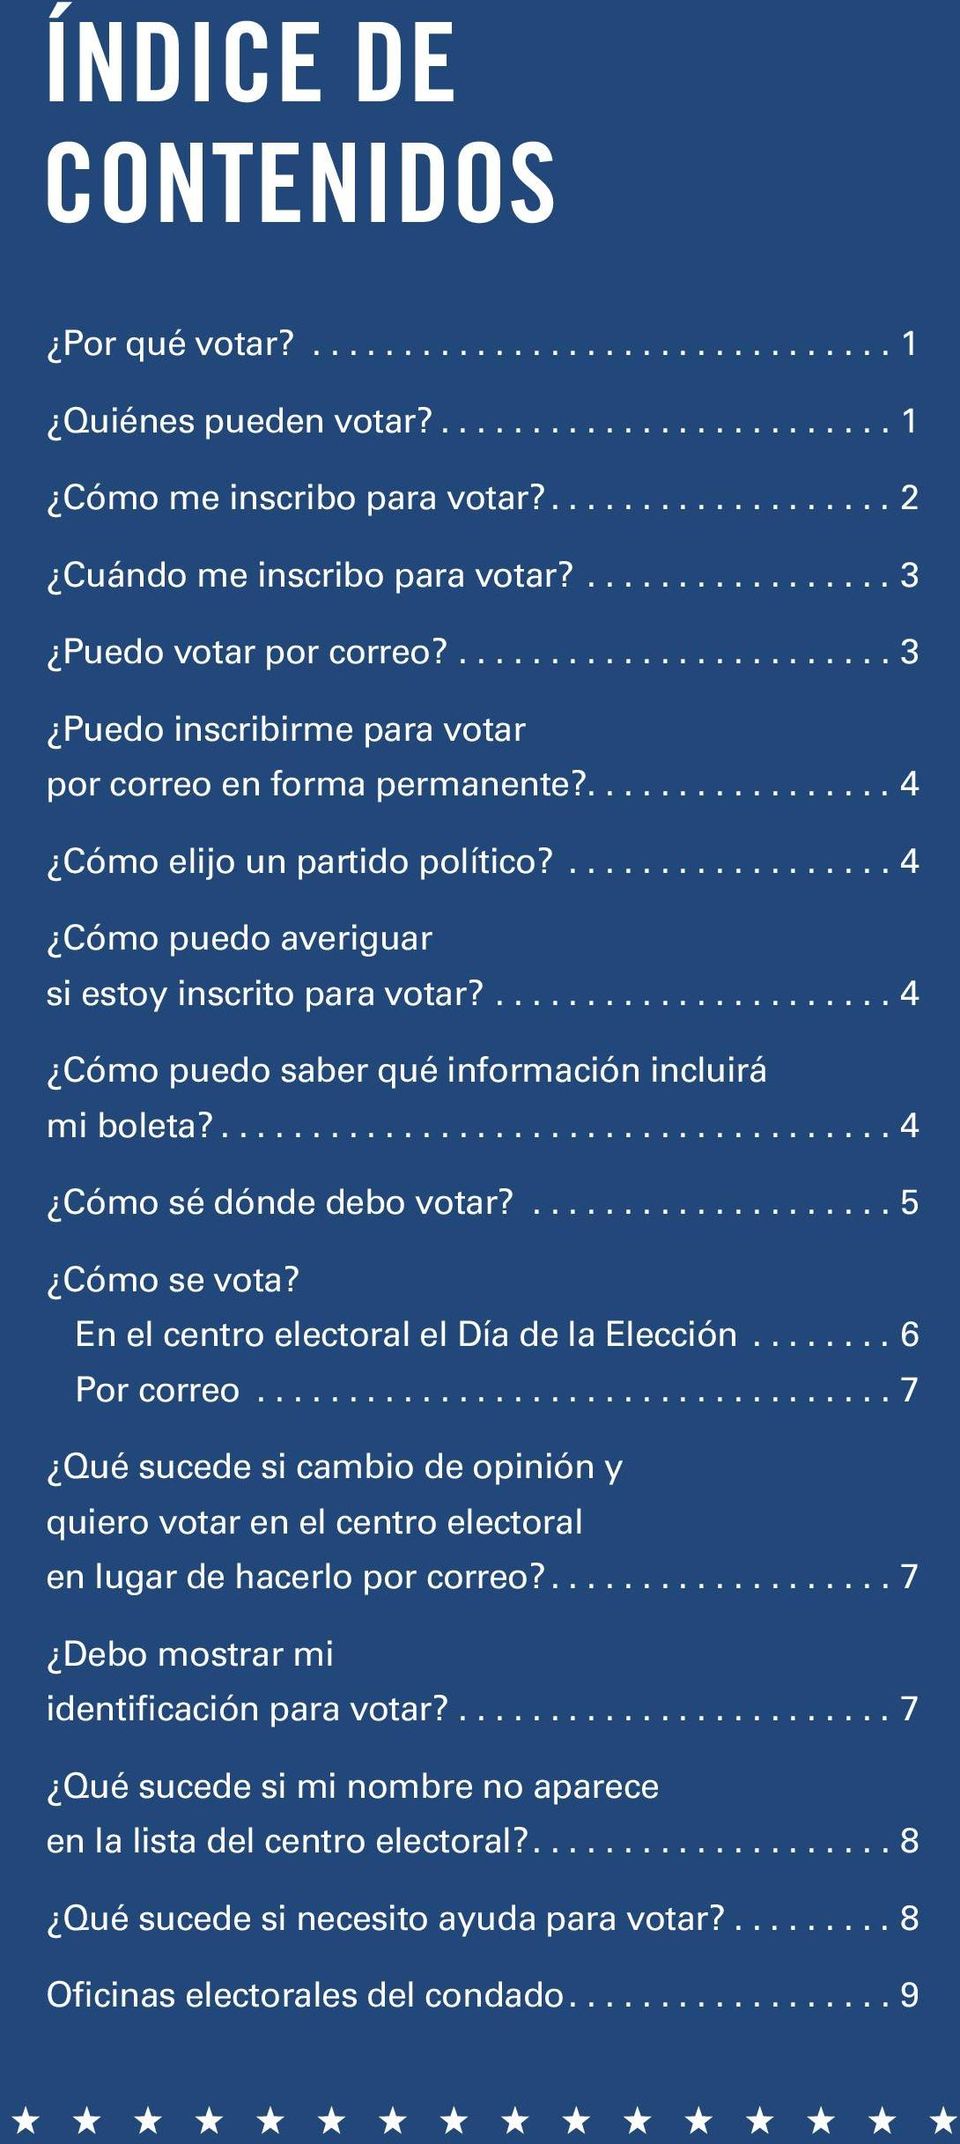 .................. 4 Cómo puedo averiguar si estoy inscrito para votar?...................... 4 Cómo puedo saber qué información incluirá mi boleta?..................................... 4 Cómo sé dónde debo votar?